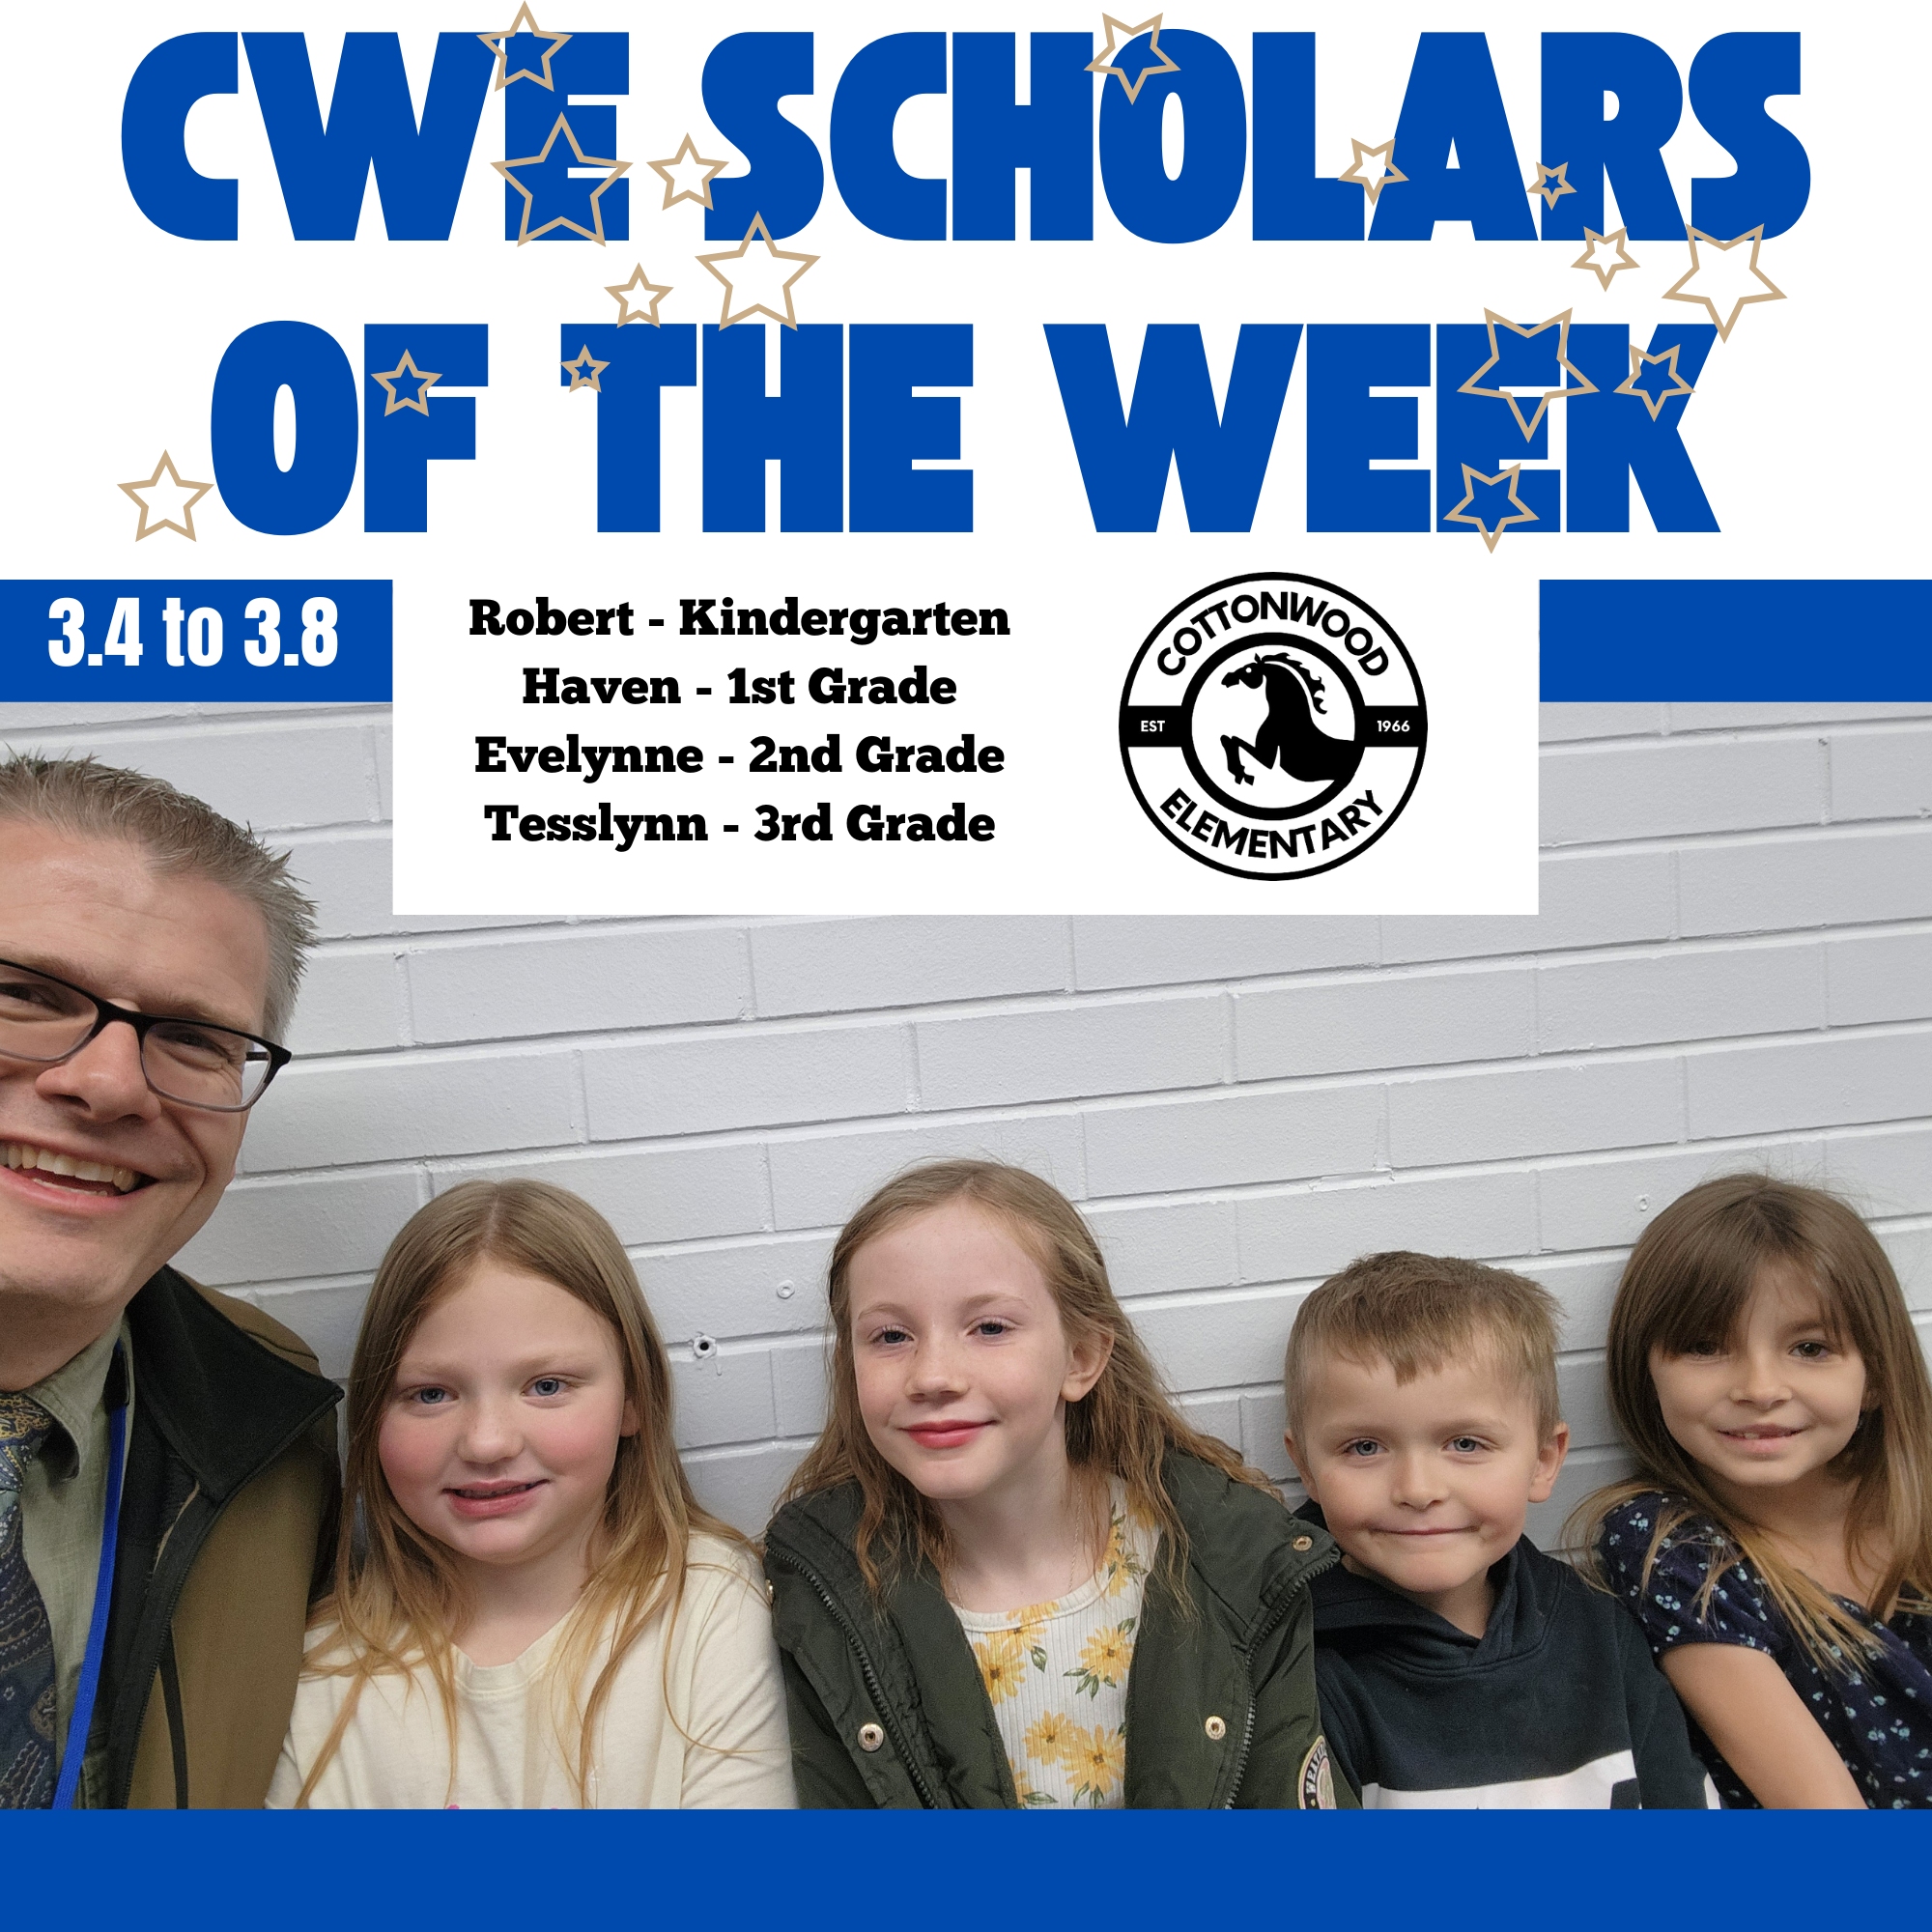 CWE-Scholars-of-the-Week-3.4-to-3.8.jpg